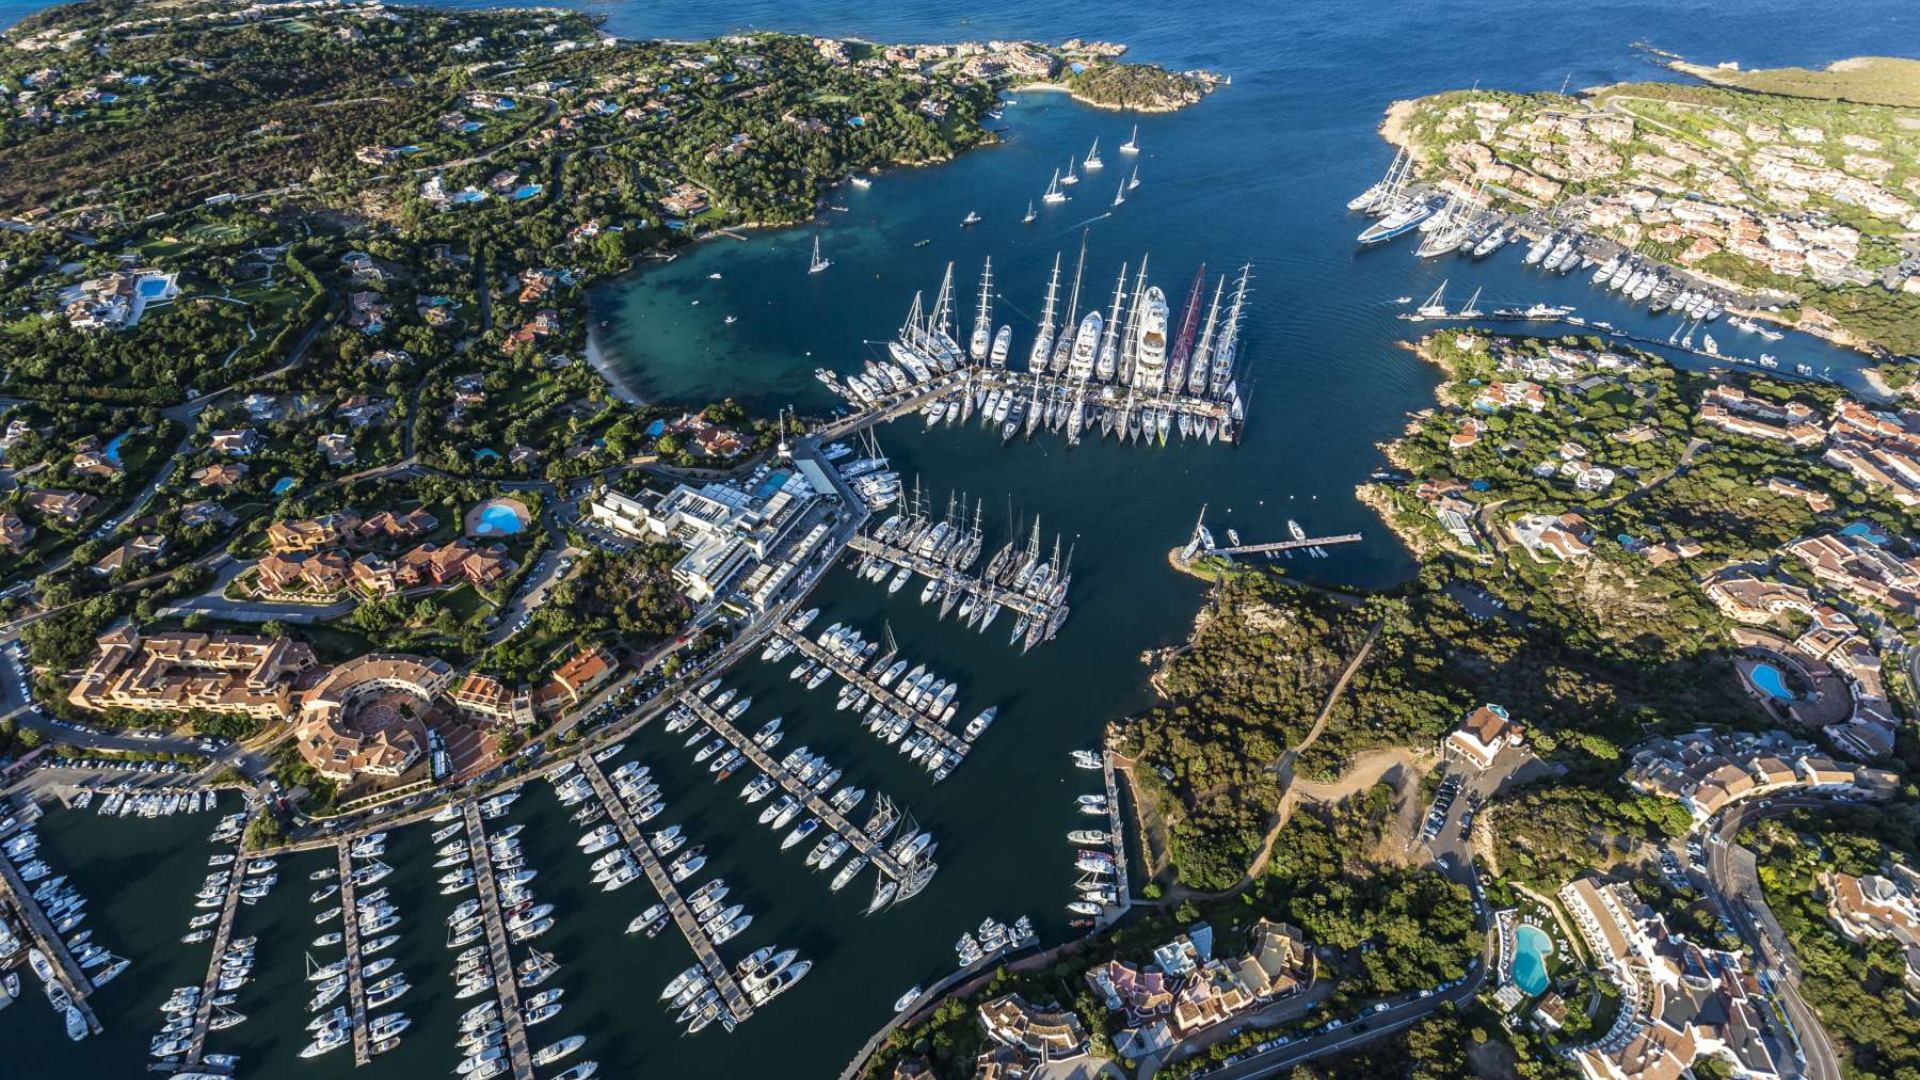 Scopri di più sull'articolo Yacht Club Costa Smeralda: la comunità per gli appassionati di vela